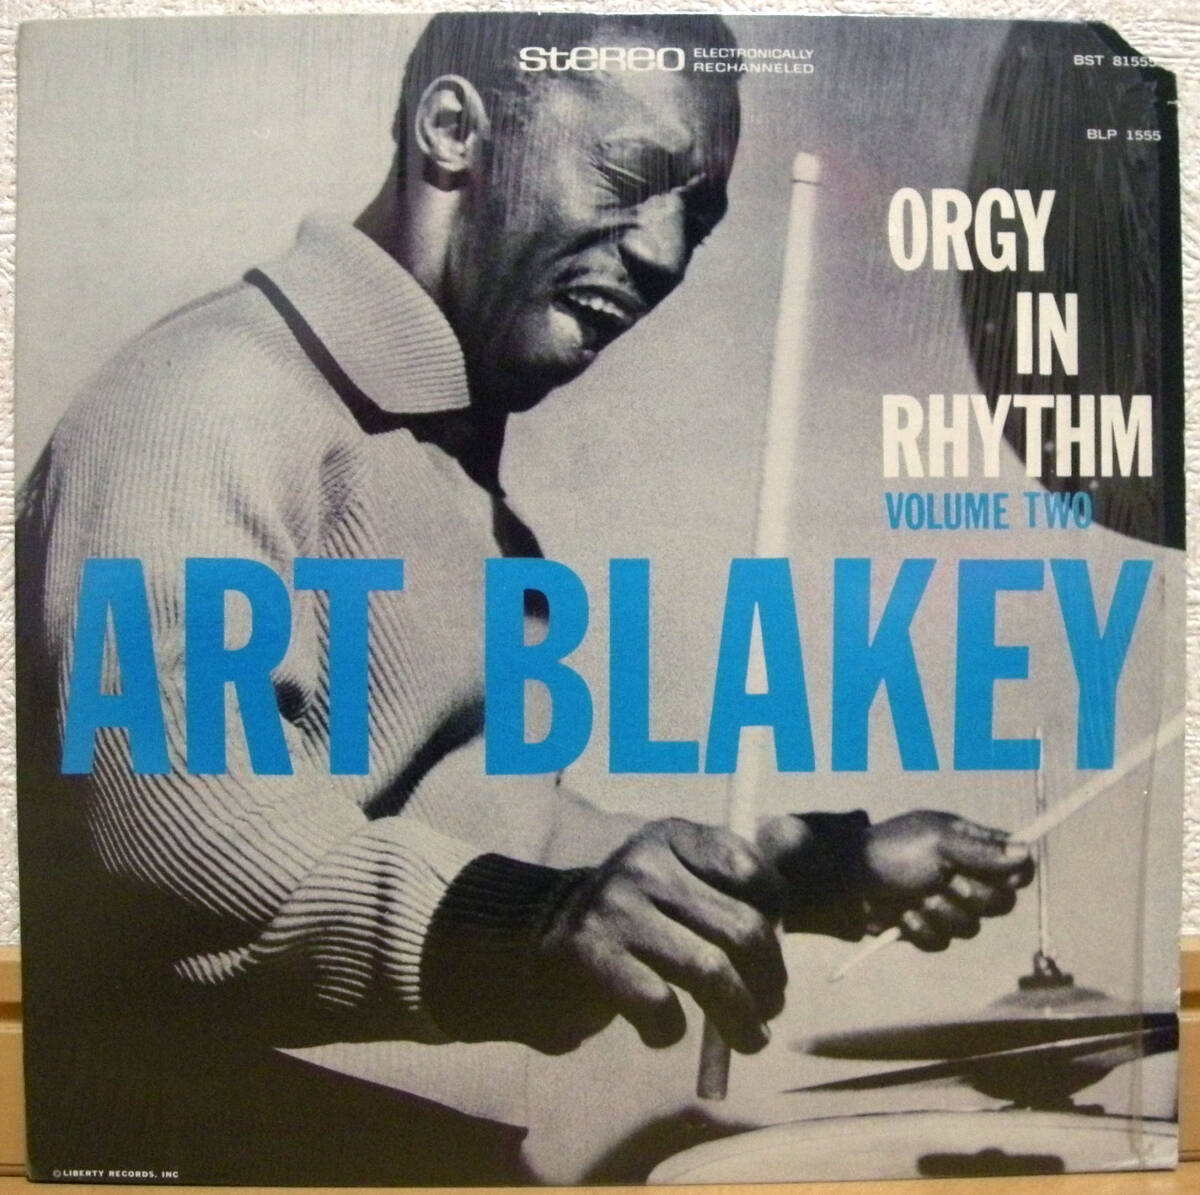 アート・ブレイキー【US盤 LP】ART BLAKEY Orgy In Rhythm - Volume Two | Blue Note BST 81555_画像1